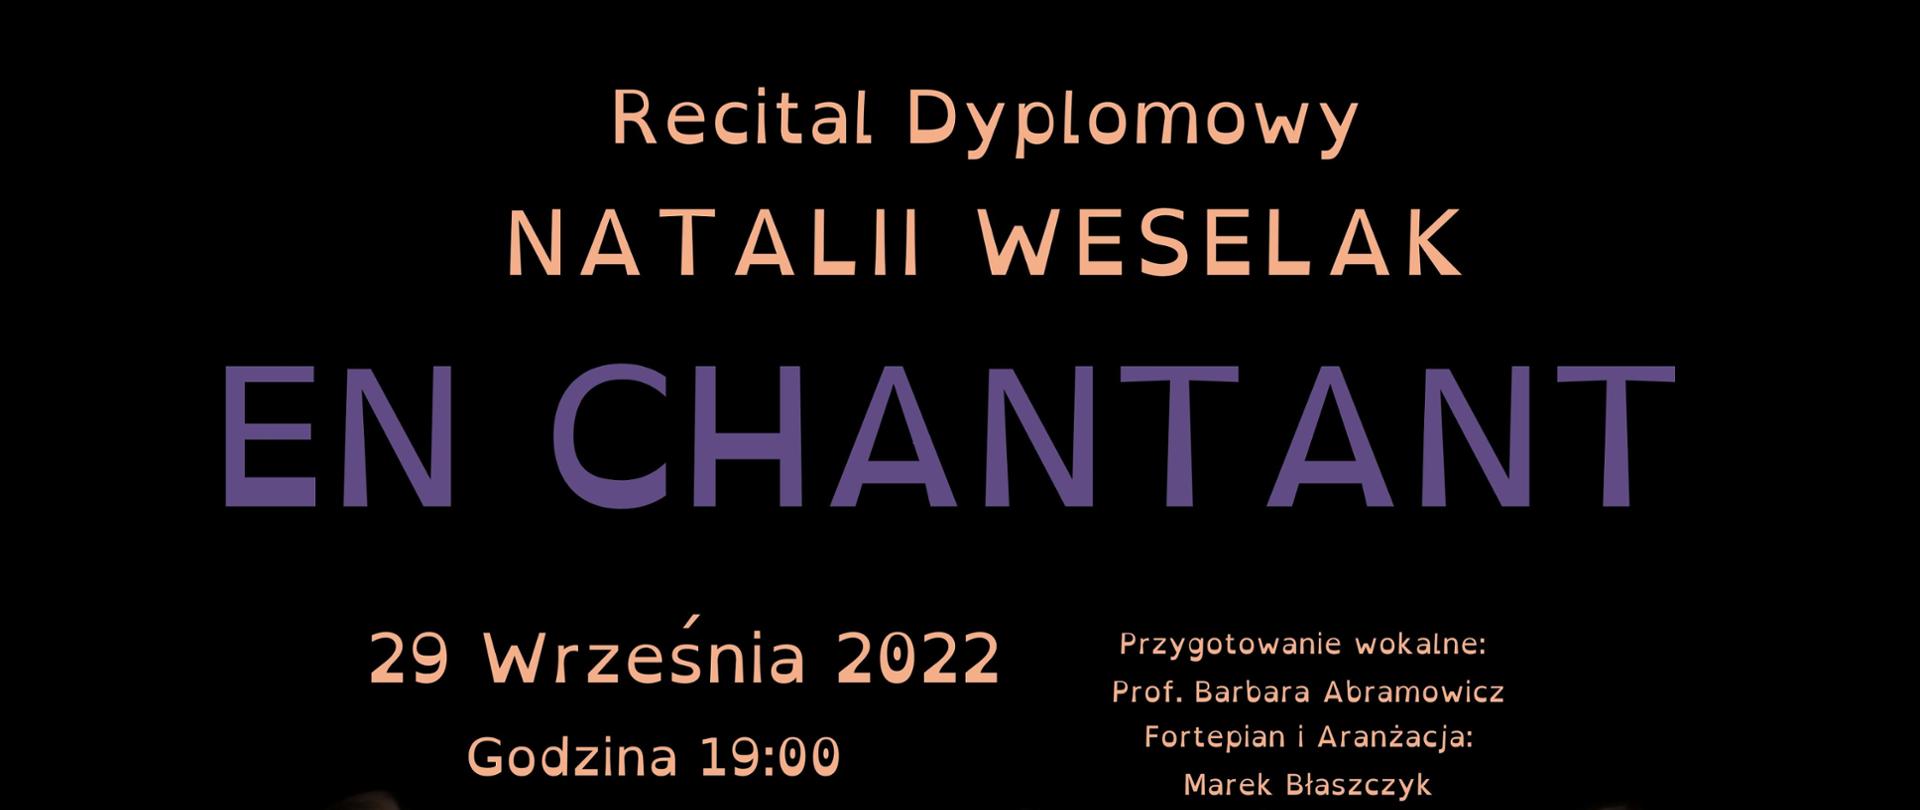 Afisz -na ciemnym tle trzy zdjęcia wykonawcy i napis "Recital dyplomowy NATALII WESELAK - En Chantant, , KCEM, ul. Połczyńska 56 Scena Foyer, 29.09.2022 r. godz. 19.00."